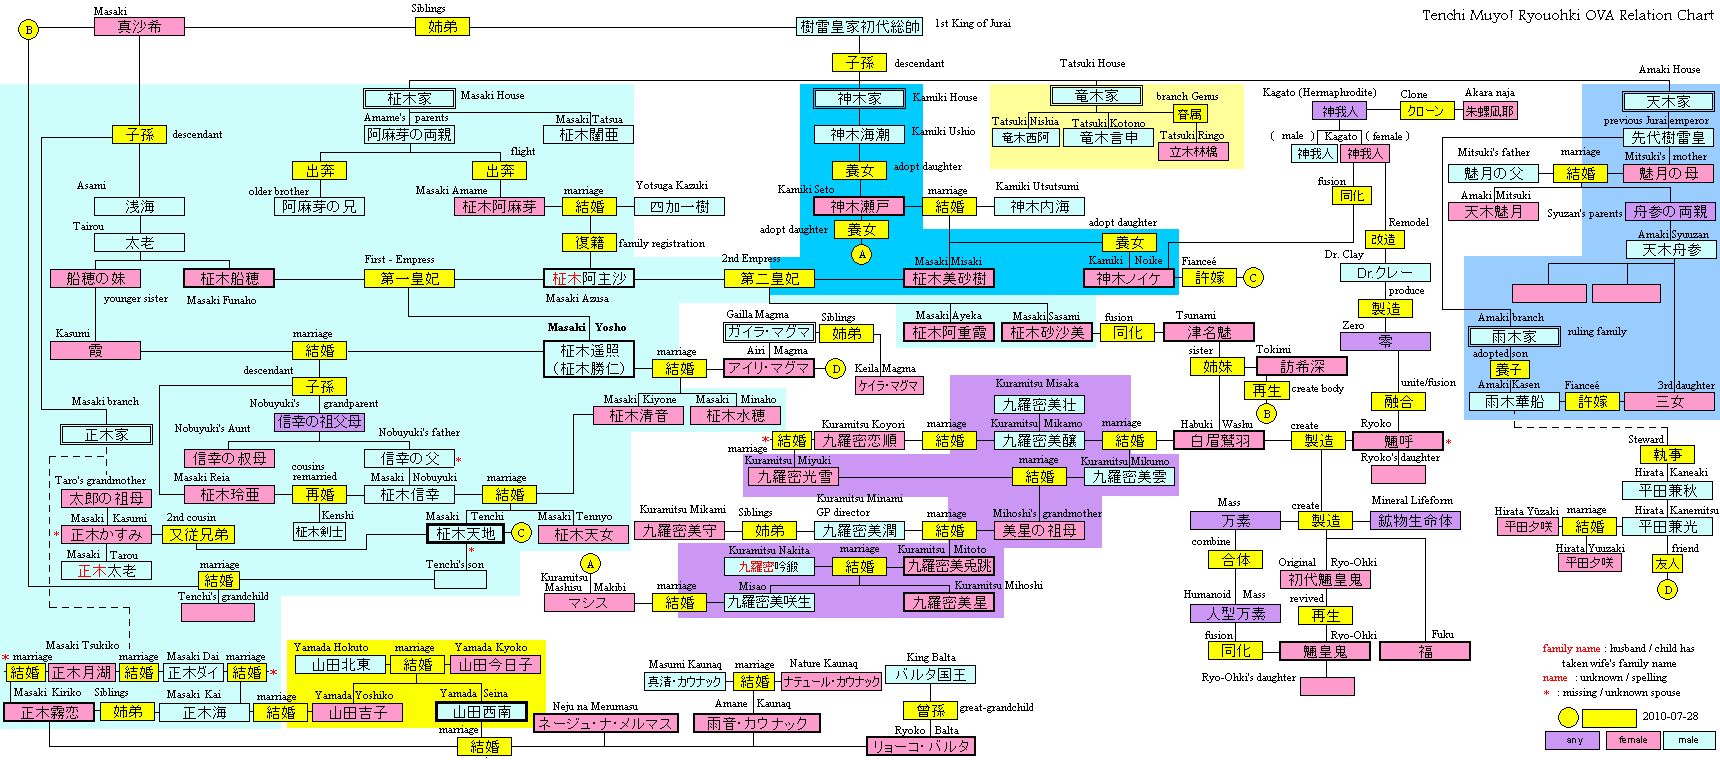 The Tenchi Muyo Family Tree